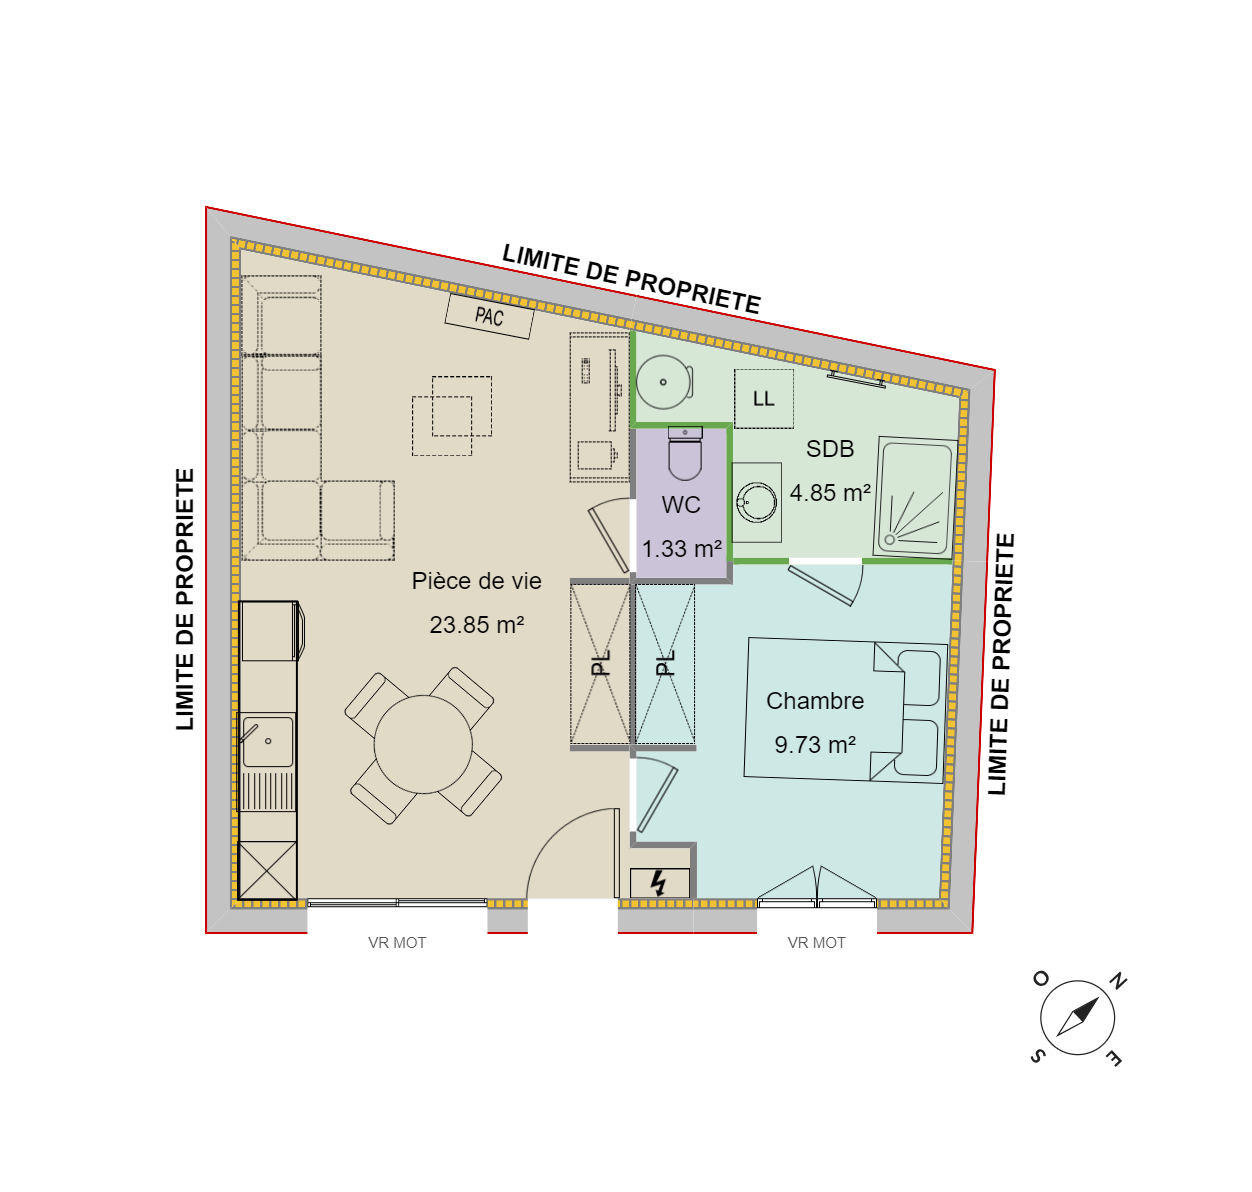 Maison T2 - 40 m² avec terrain 128 m² à TREPT (38) 2